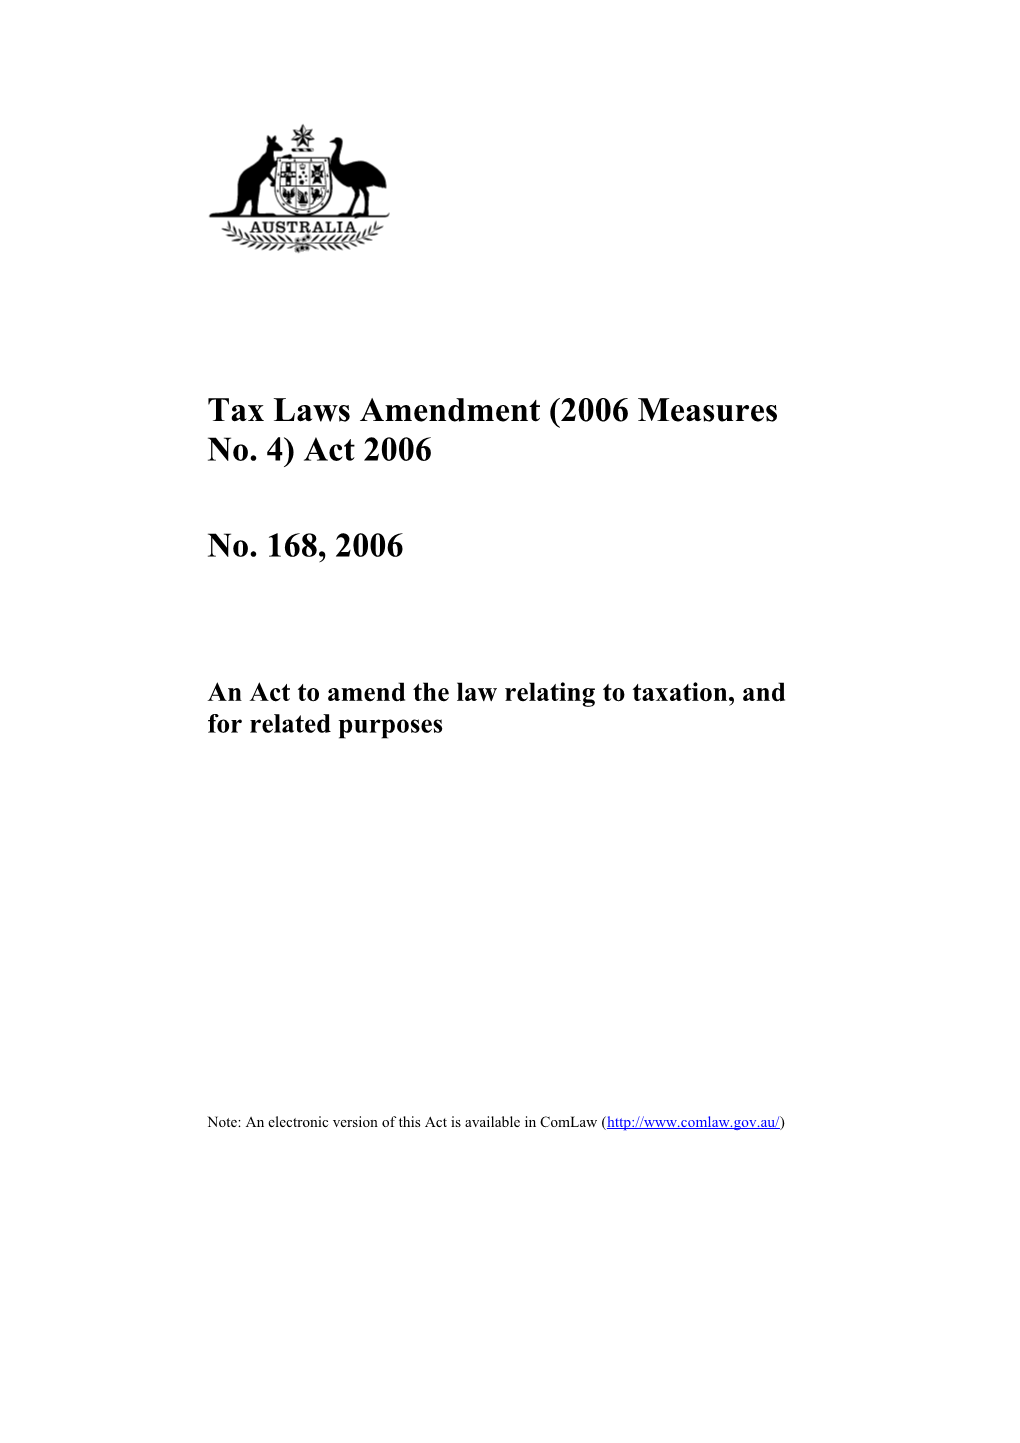 Tax Laws Amendment (2006 Measures No.4) Act 2006